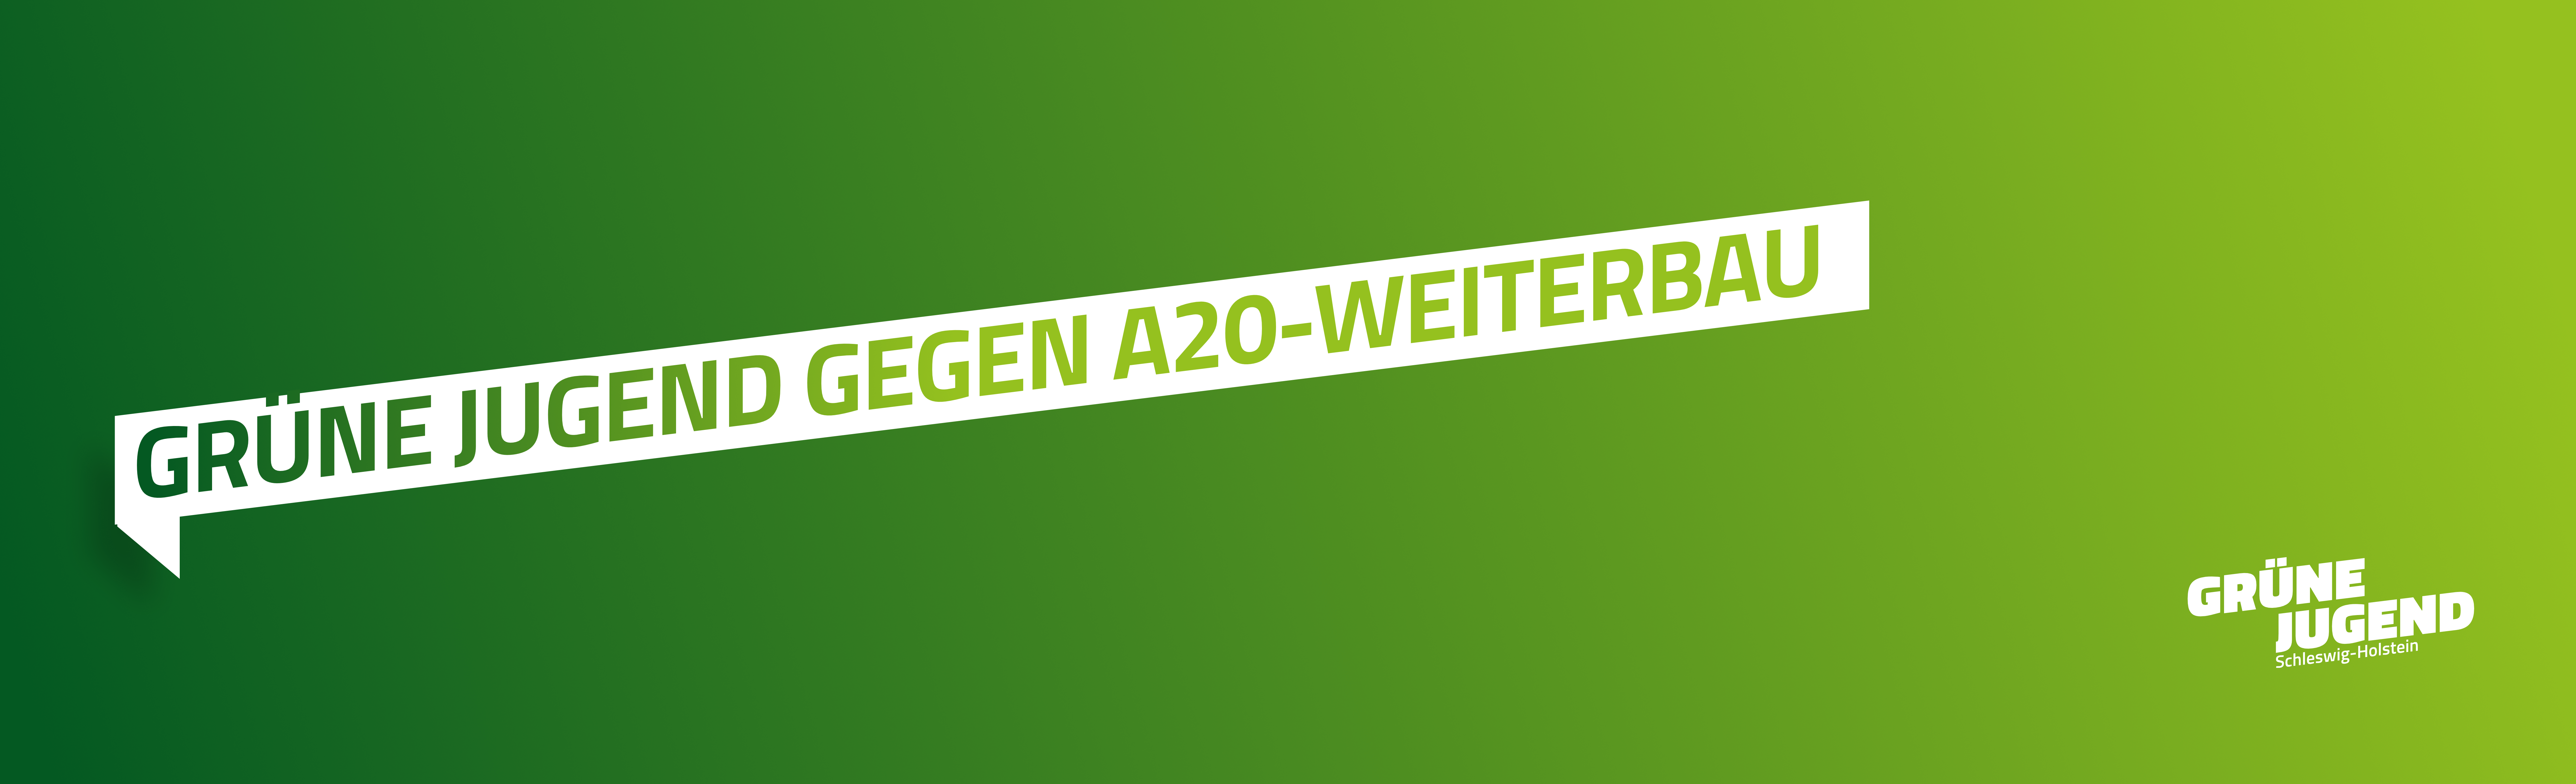 Grüne Jugend Schleswig-Holstein gegen A20-Weiterbau